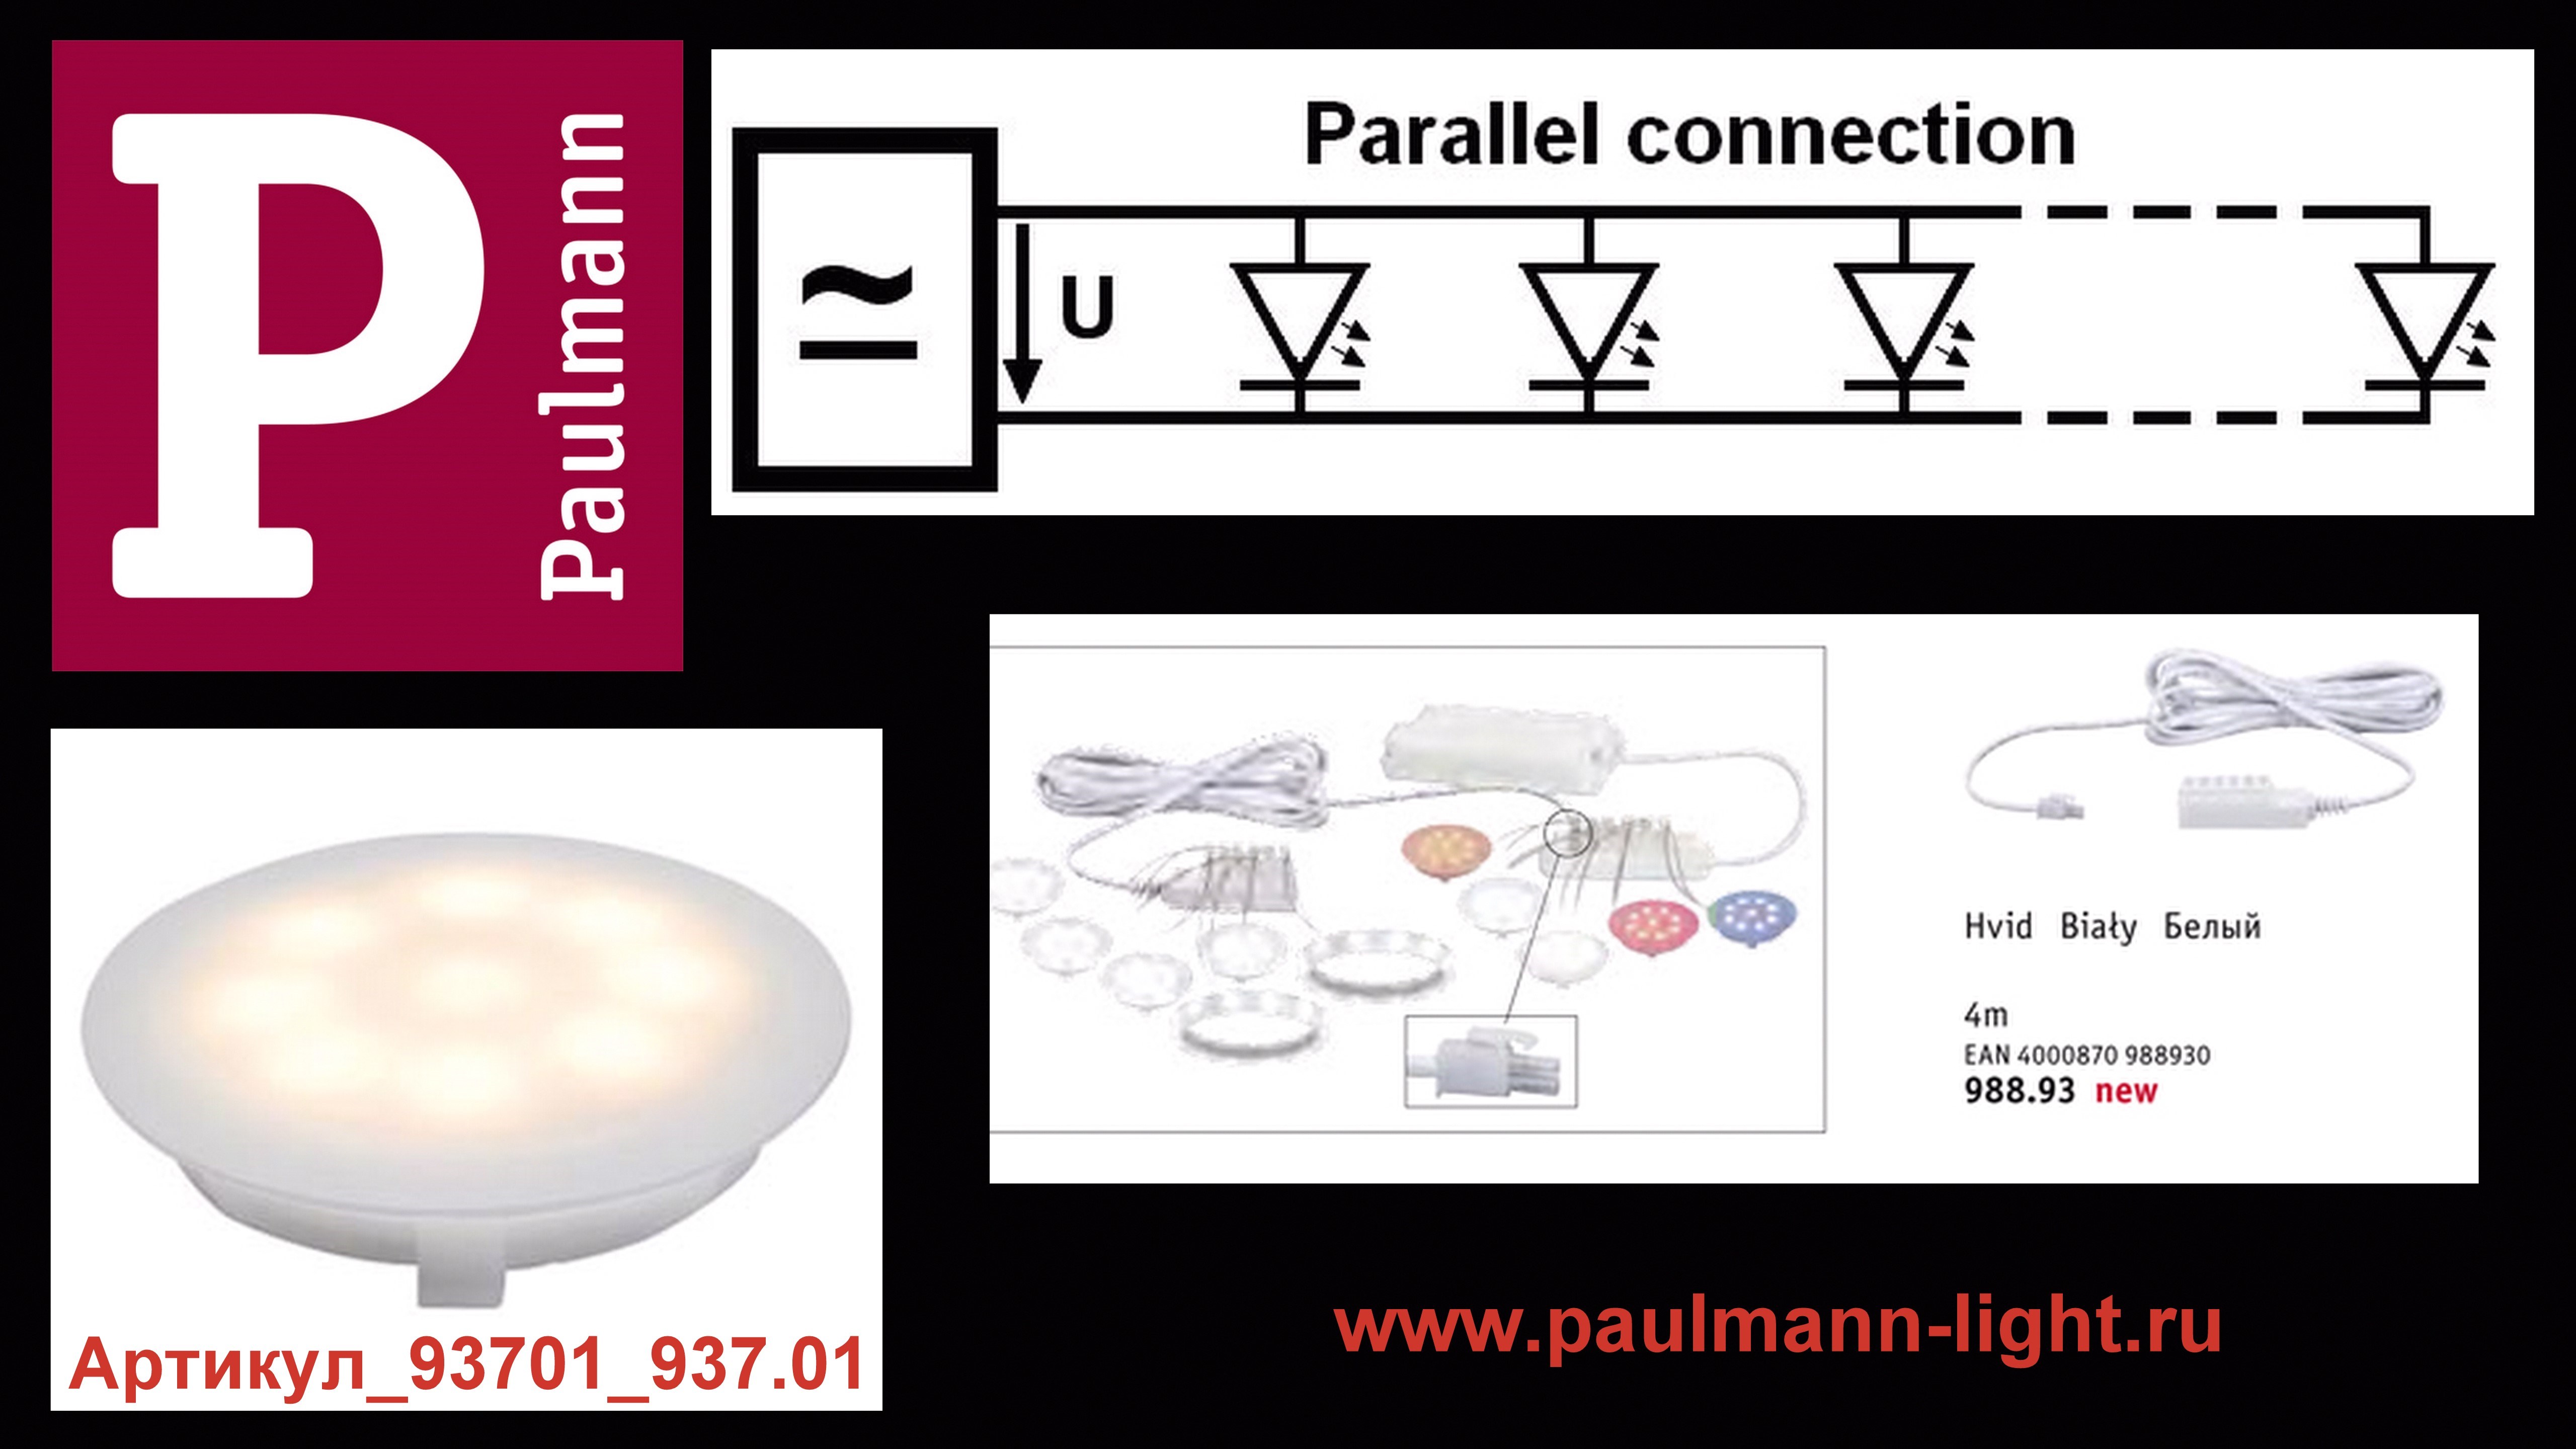 Paulmann_параллельное подключение светодиодных модулей